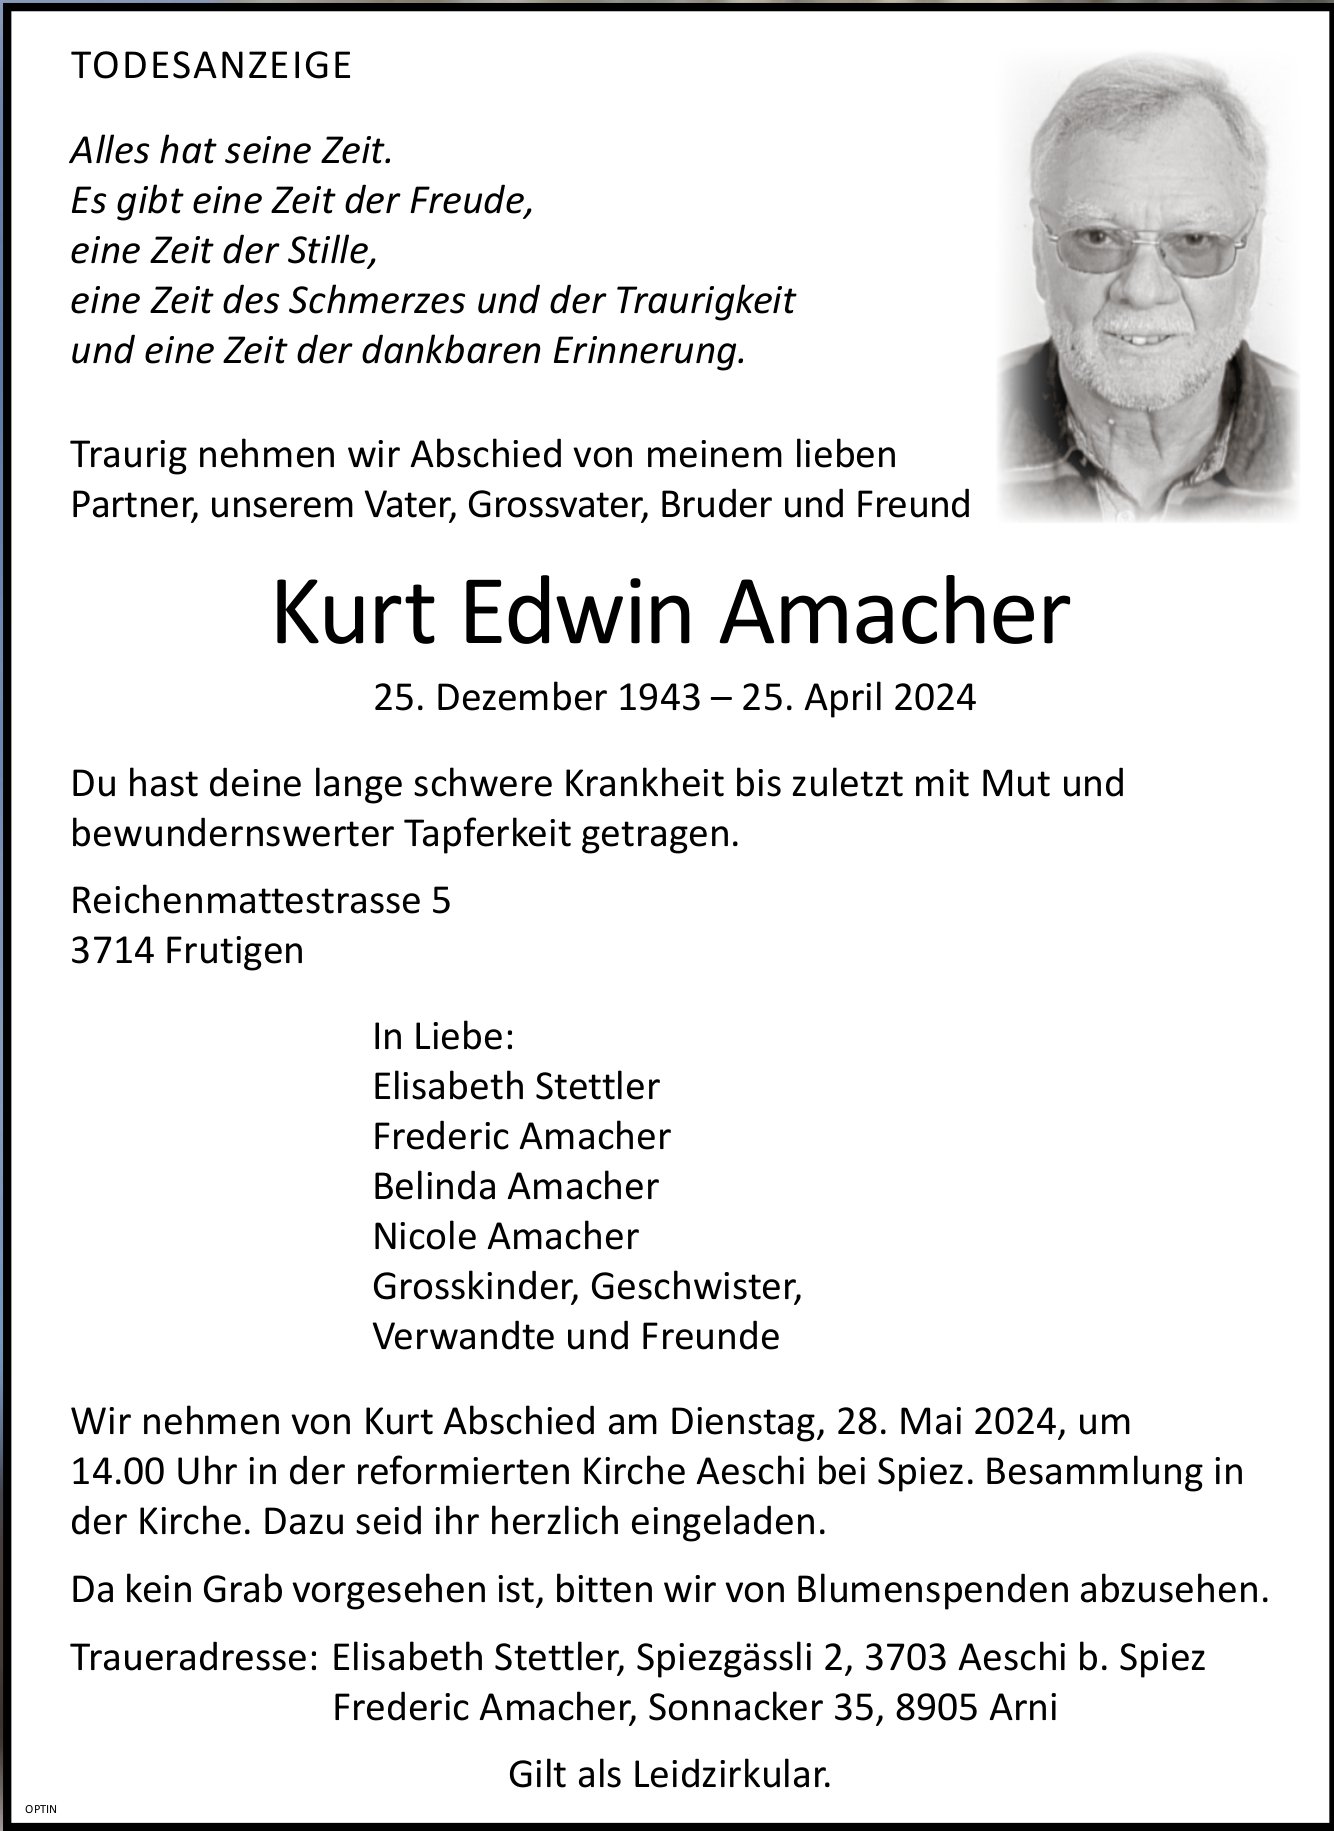 Kurt Edwin Amacher, April 2024 / TA